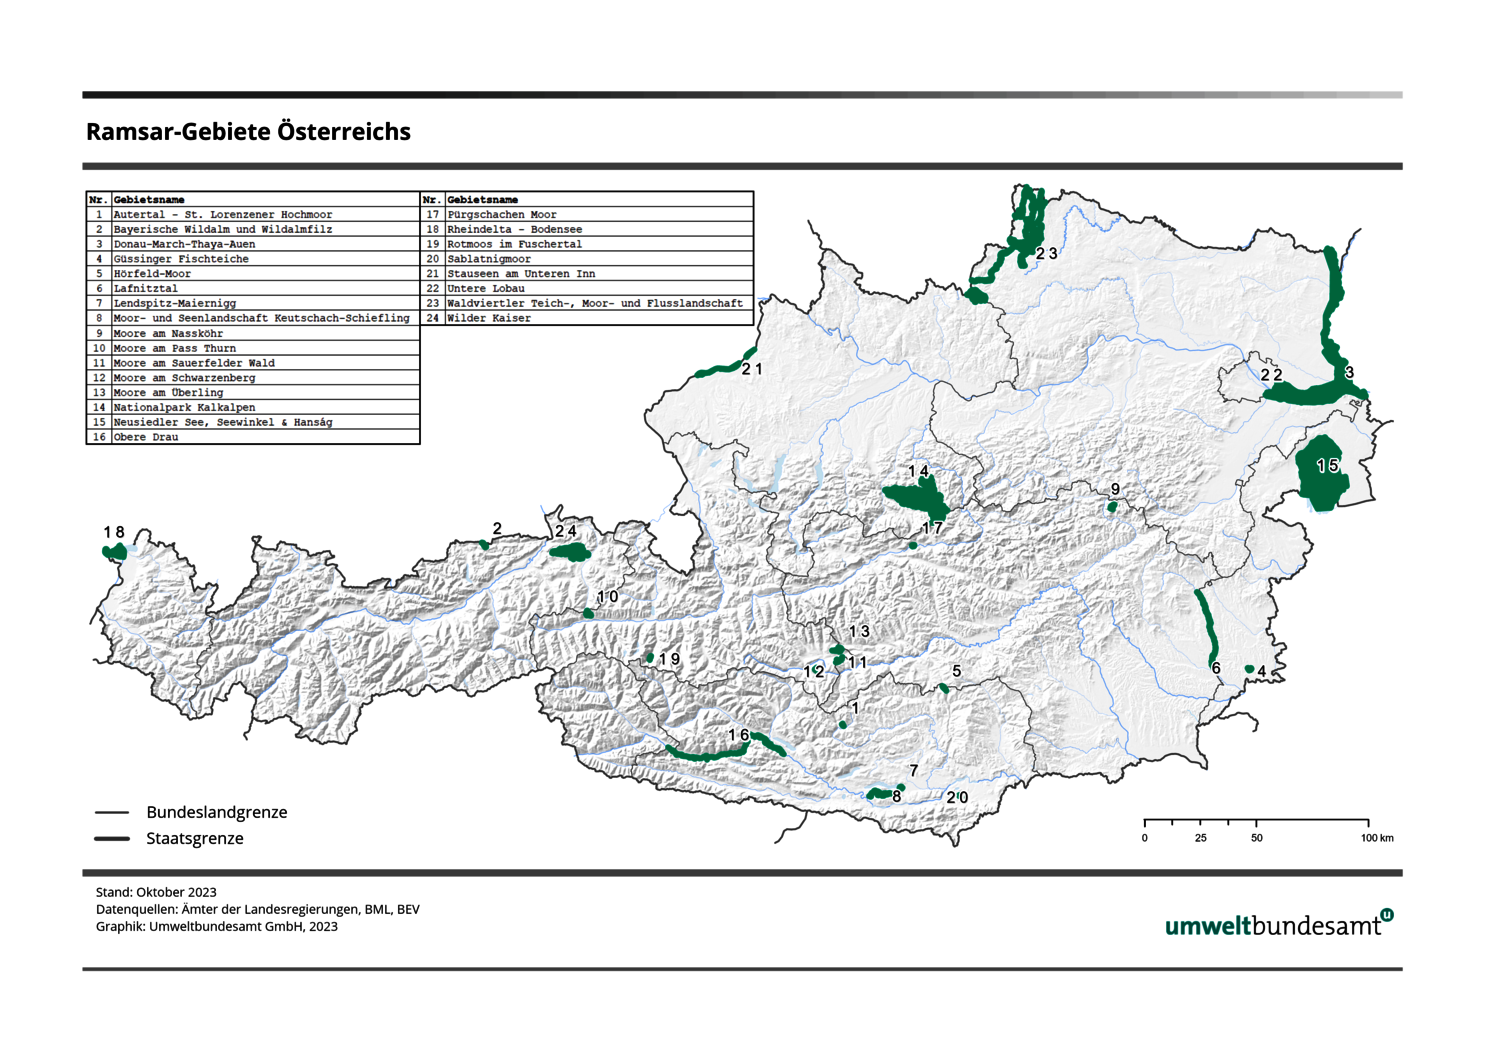 Die Österreichkarte zeigt die 24 Ramsar-Gebiete.